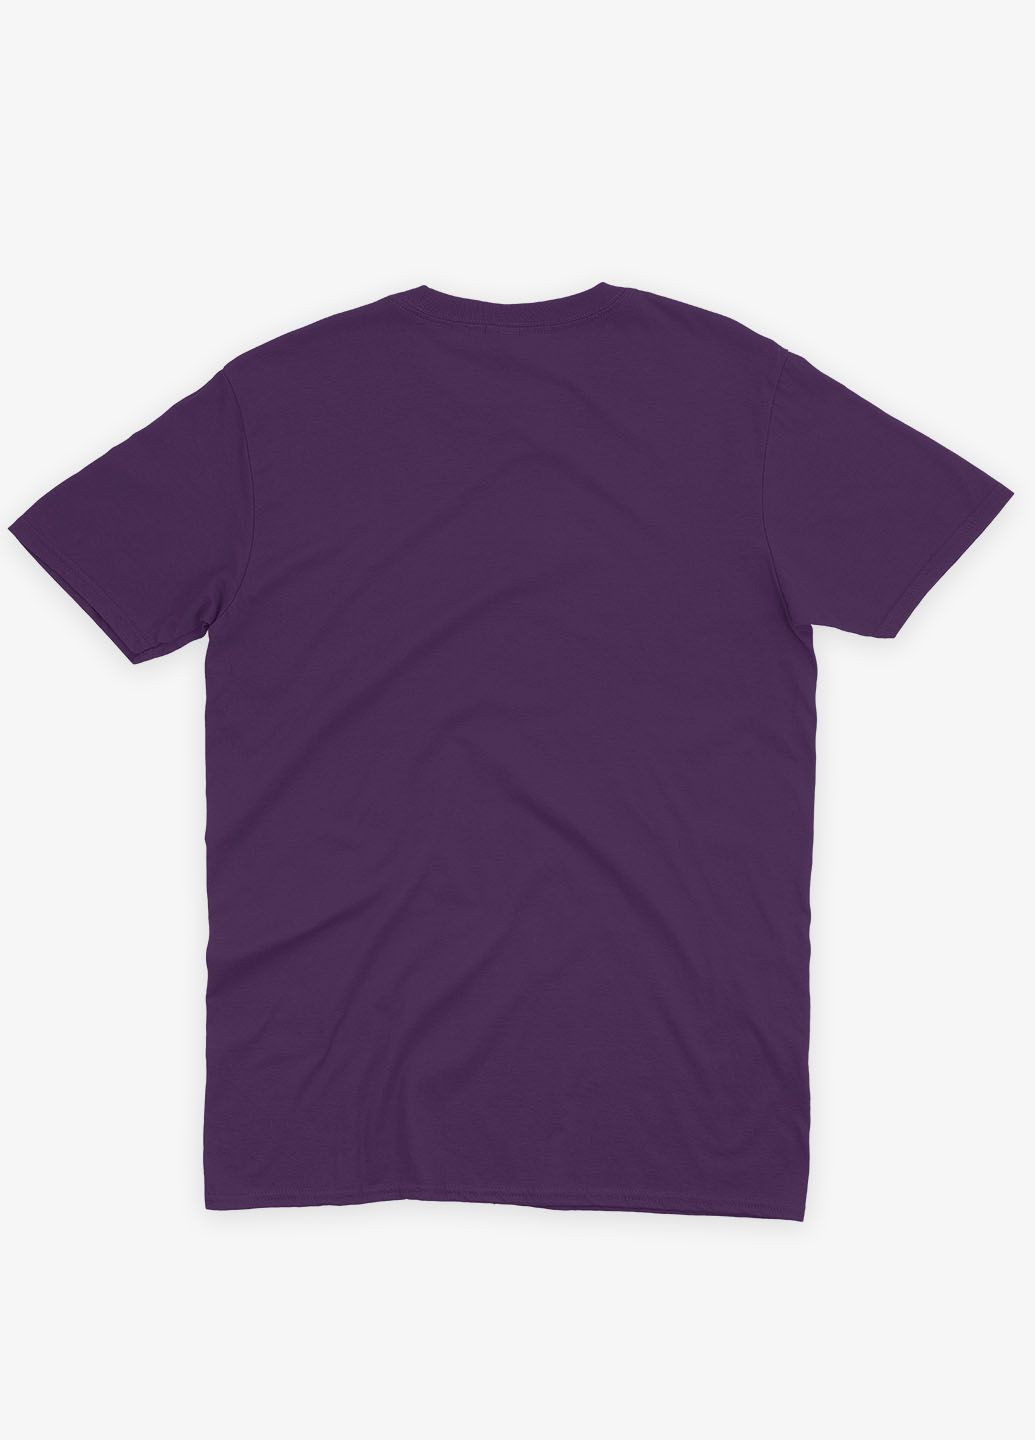 Фиолетовая демисезонная футболка для девочки с принтом супергероя - бэтмен (ts001-1-dby-006-003-044-g) Modno